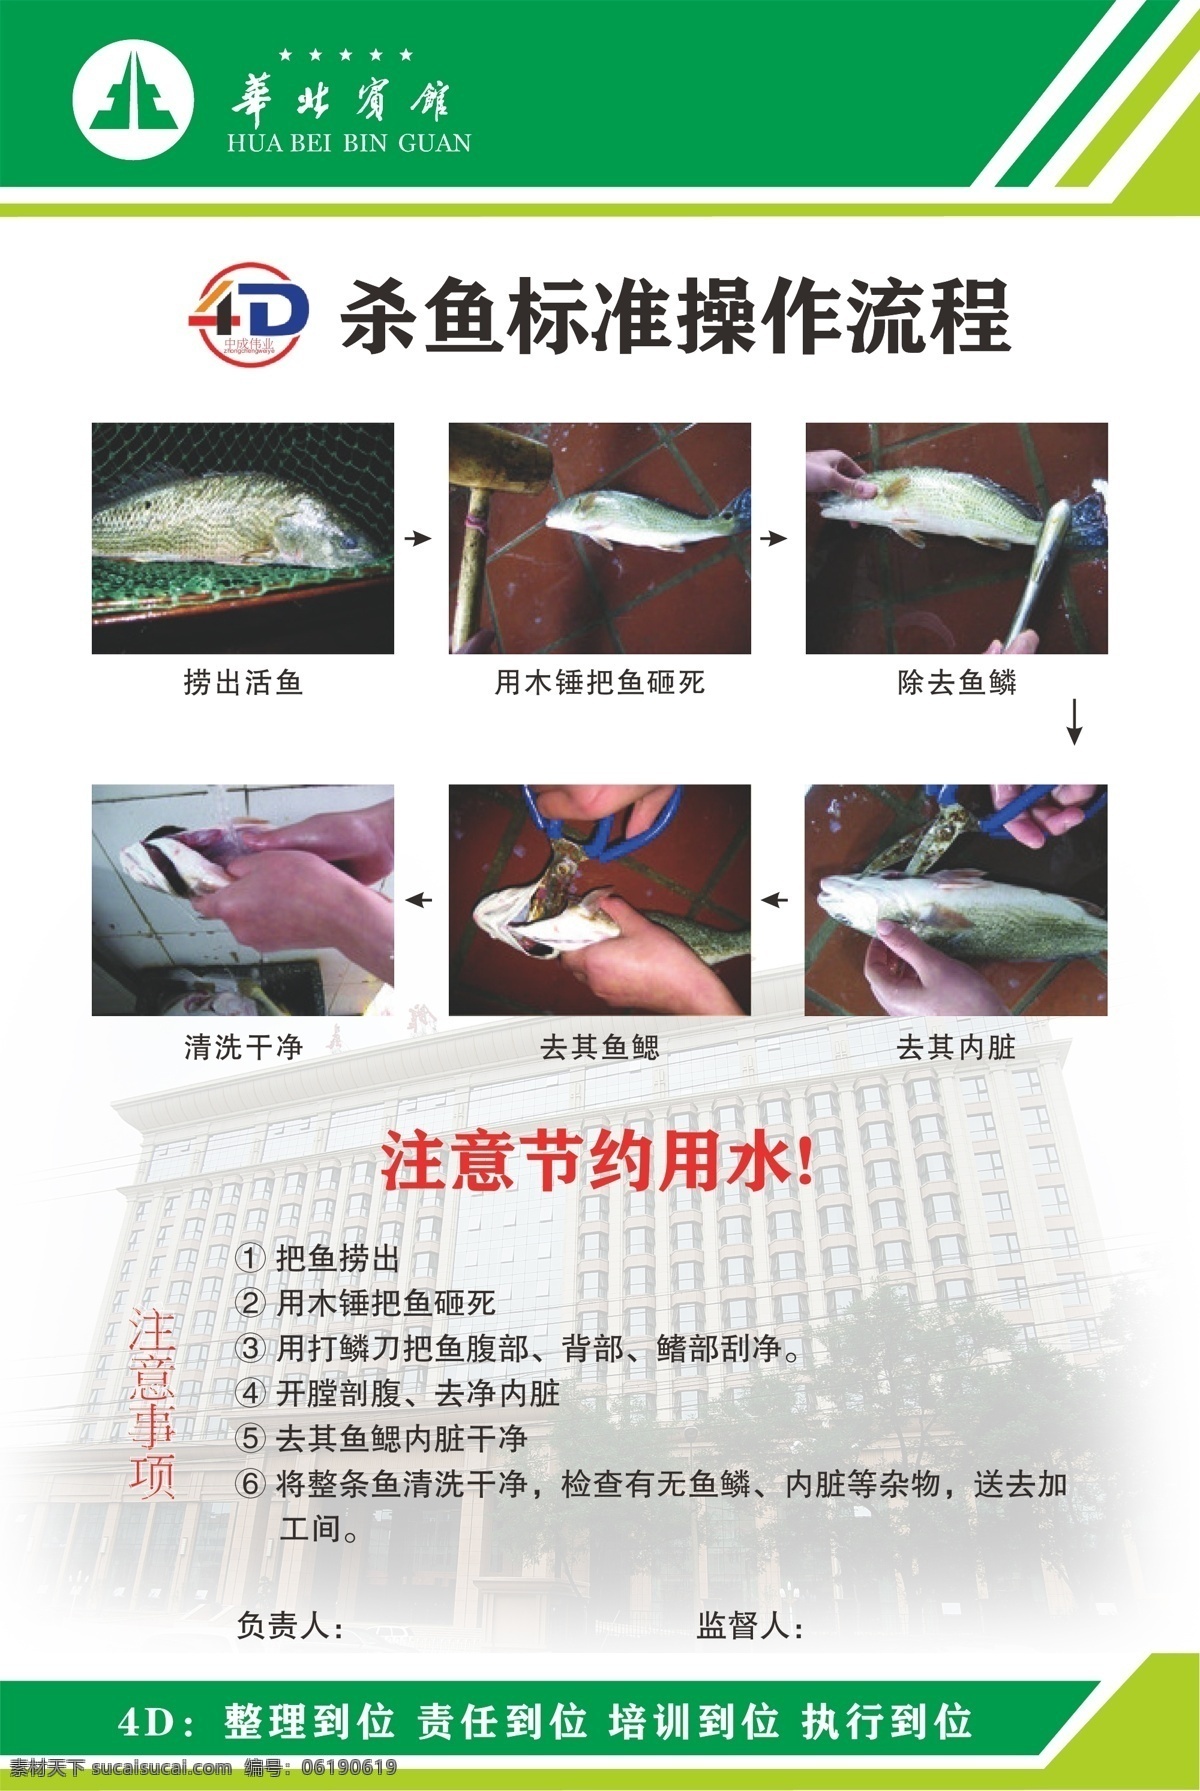 杀 鱼 标准 操作 流程 4d 厨房 操作流程 后厨 杀鱼标准 注意事项 4d厨房